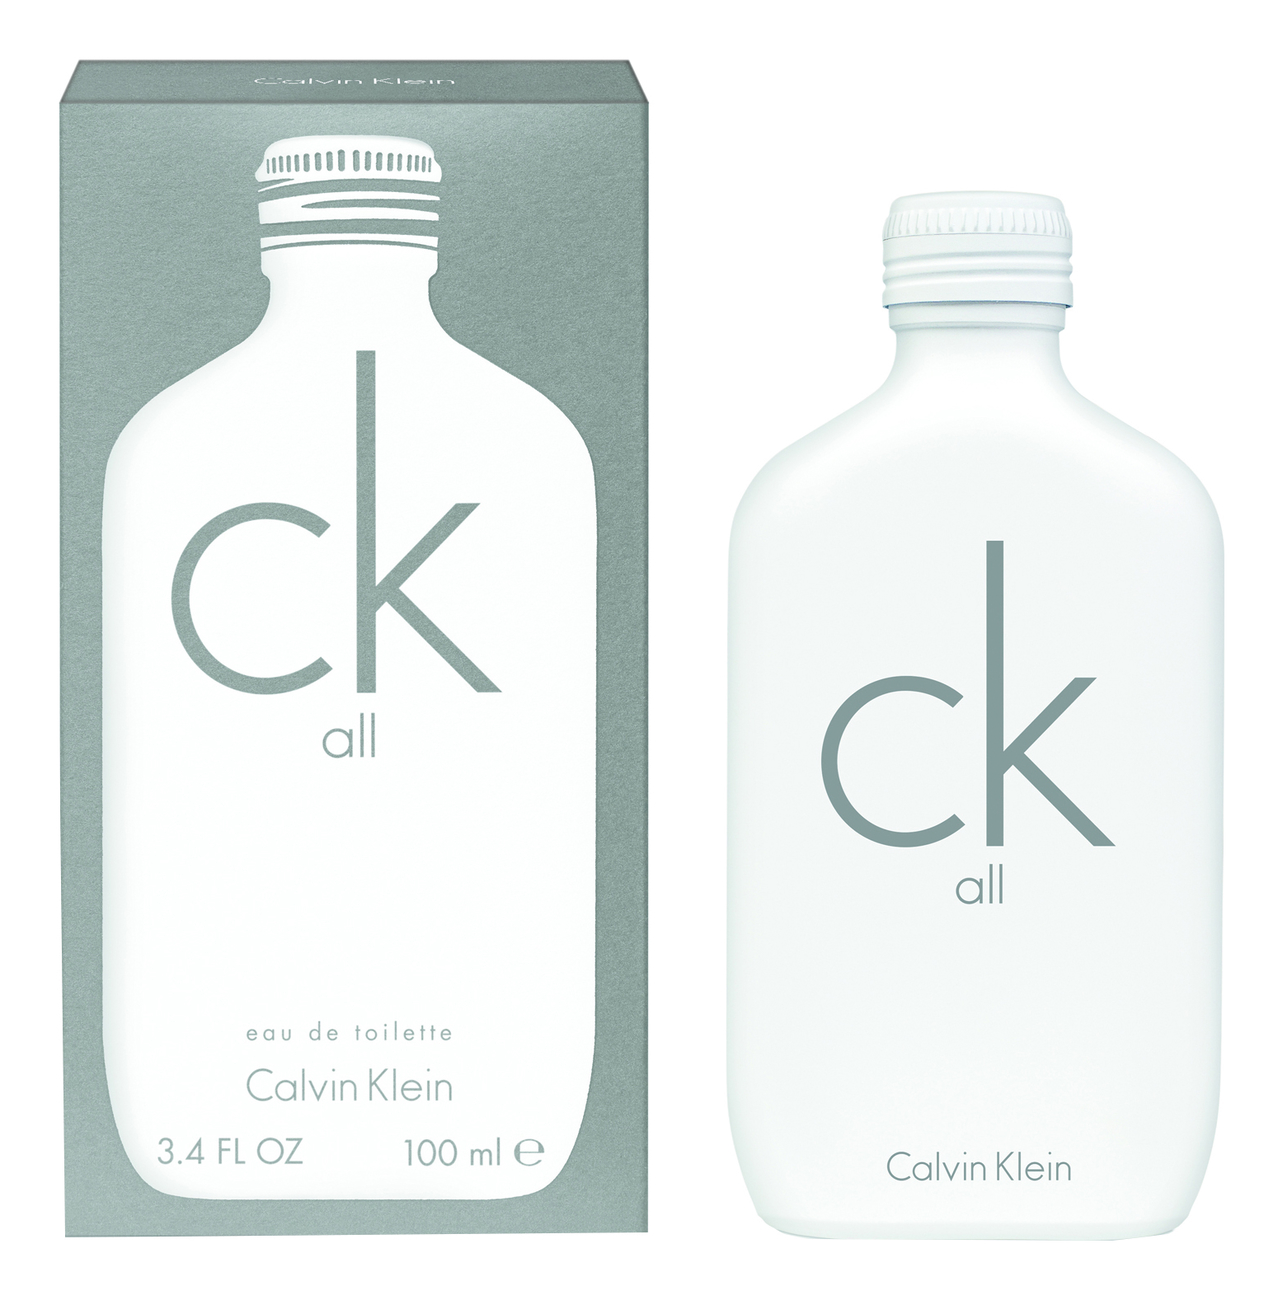 Купить CK All: туалетная вода 100мл, Calvin Klein